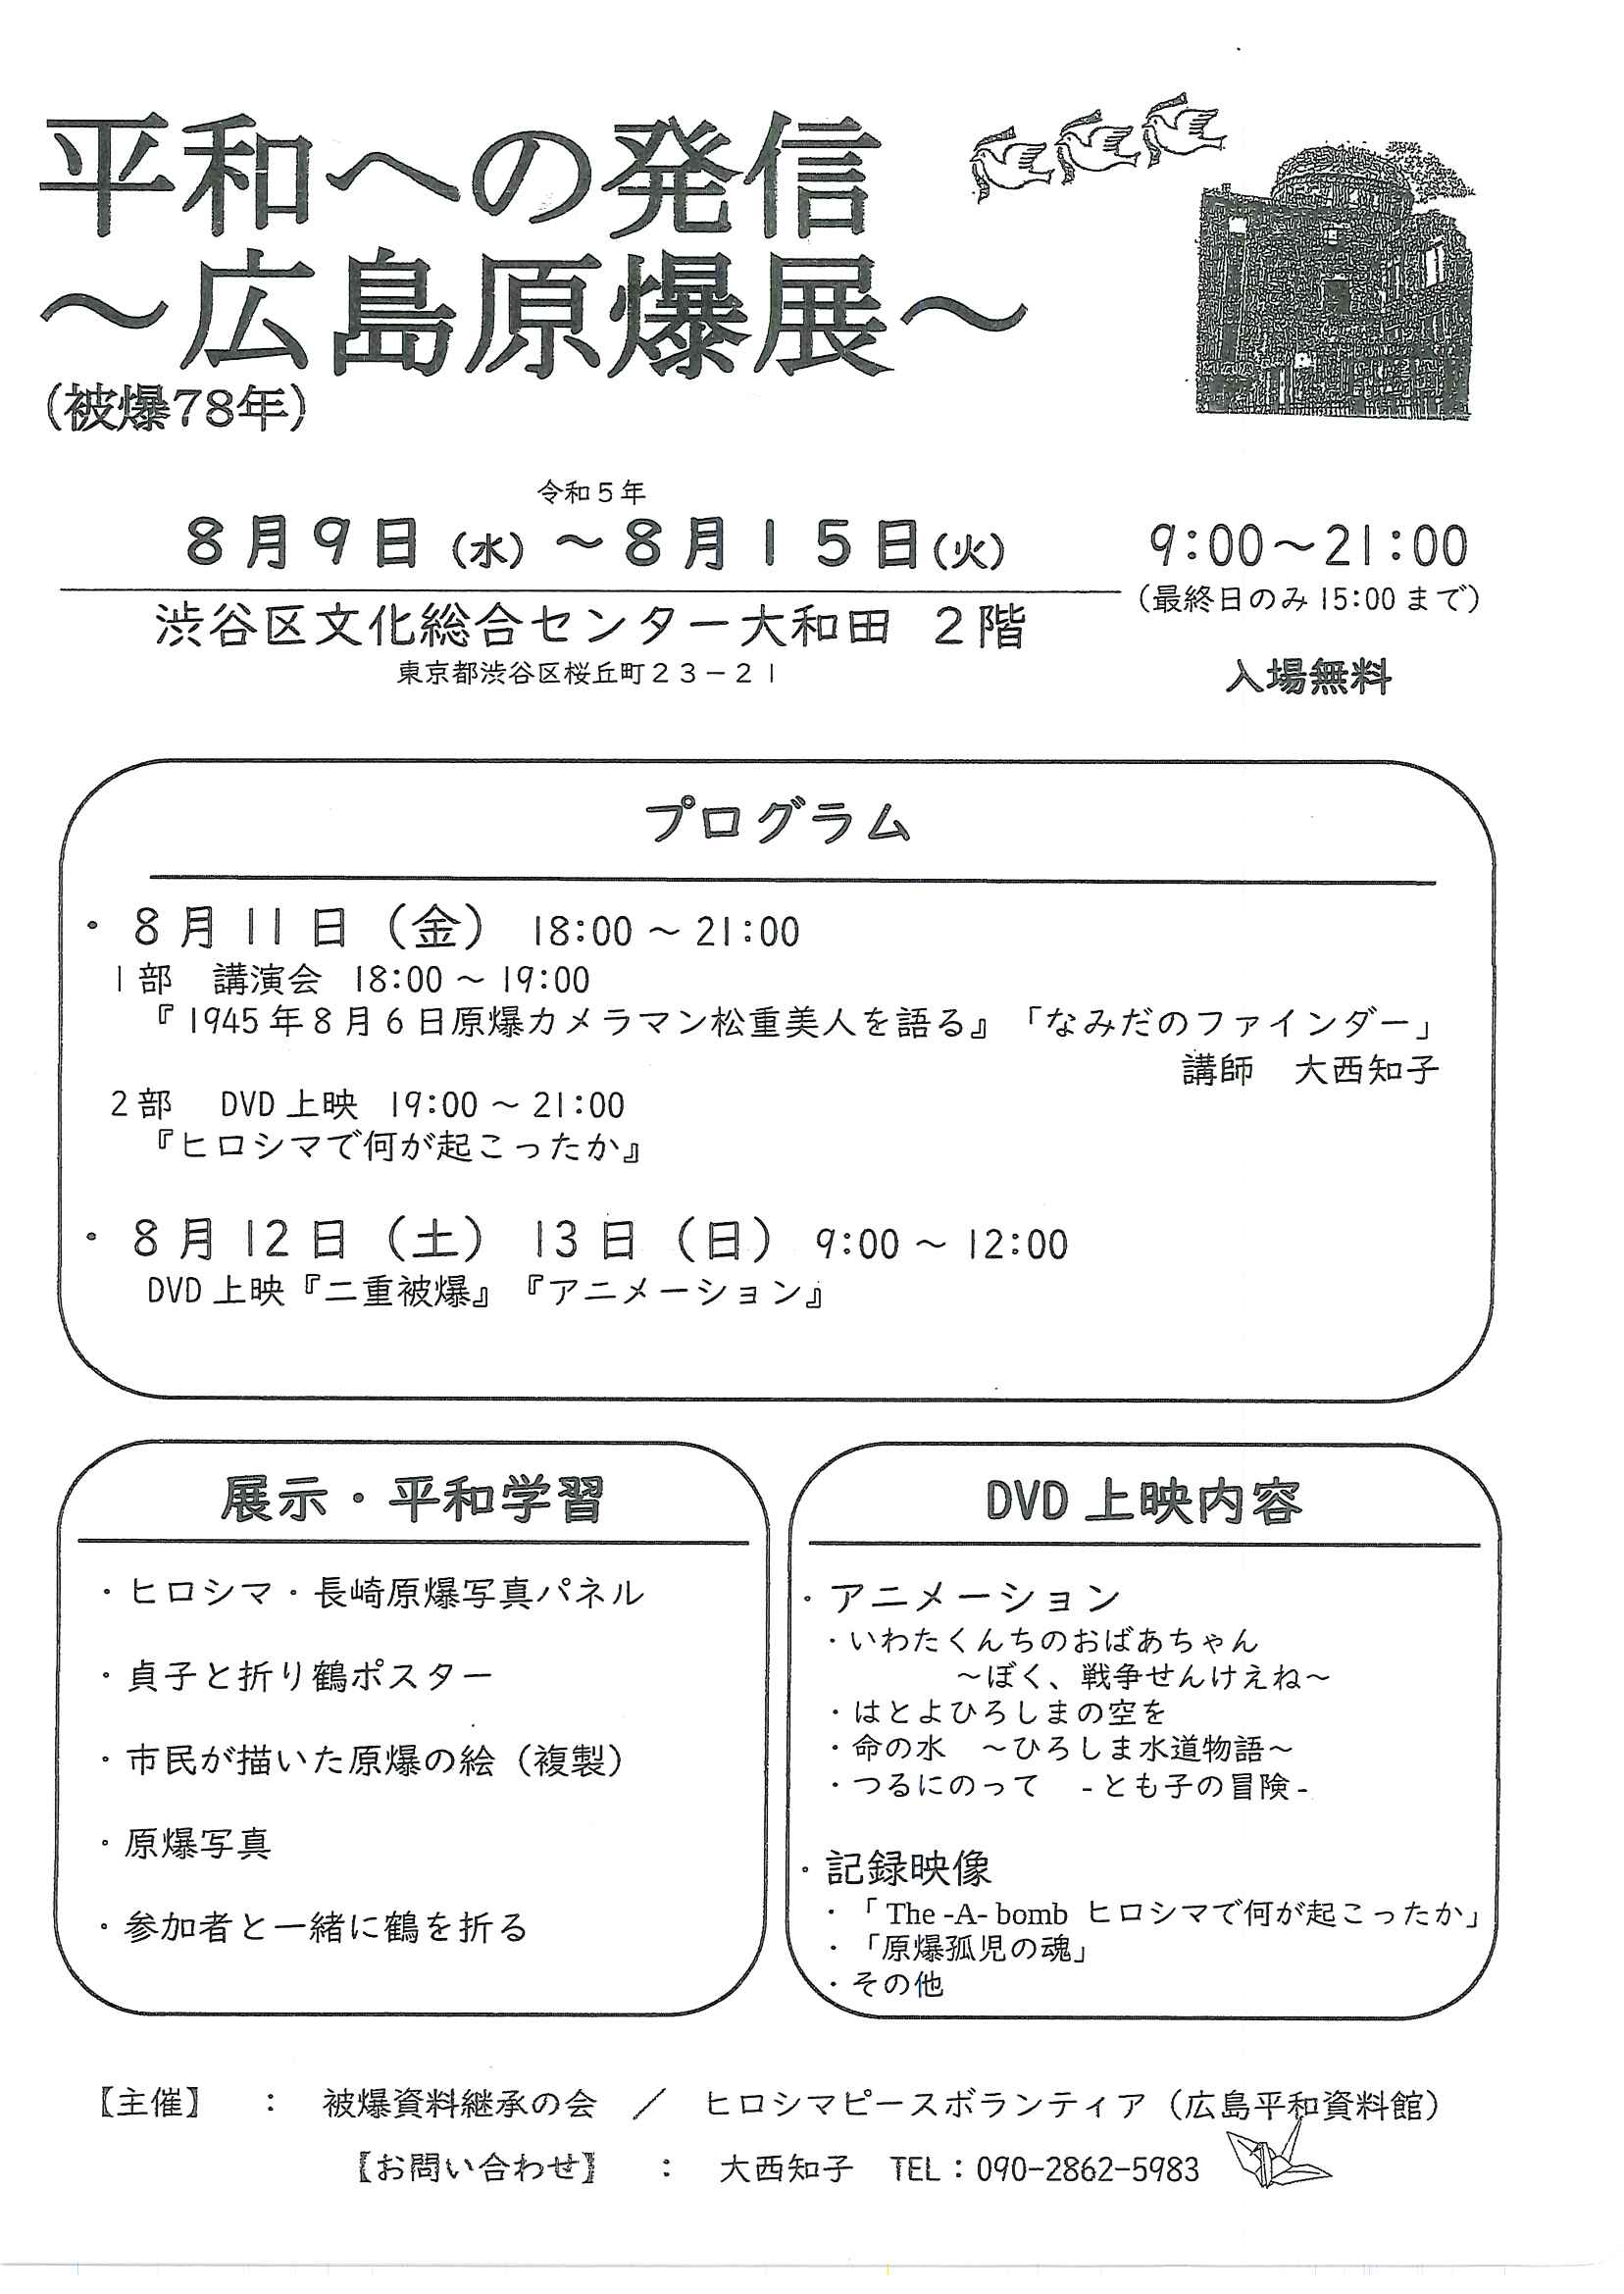 8/9-15 平和への発信～広島原爆展～